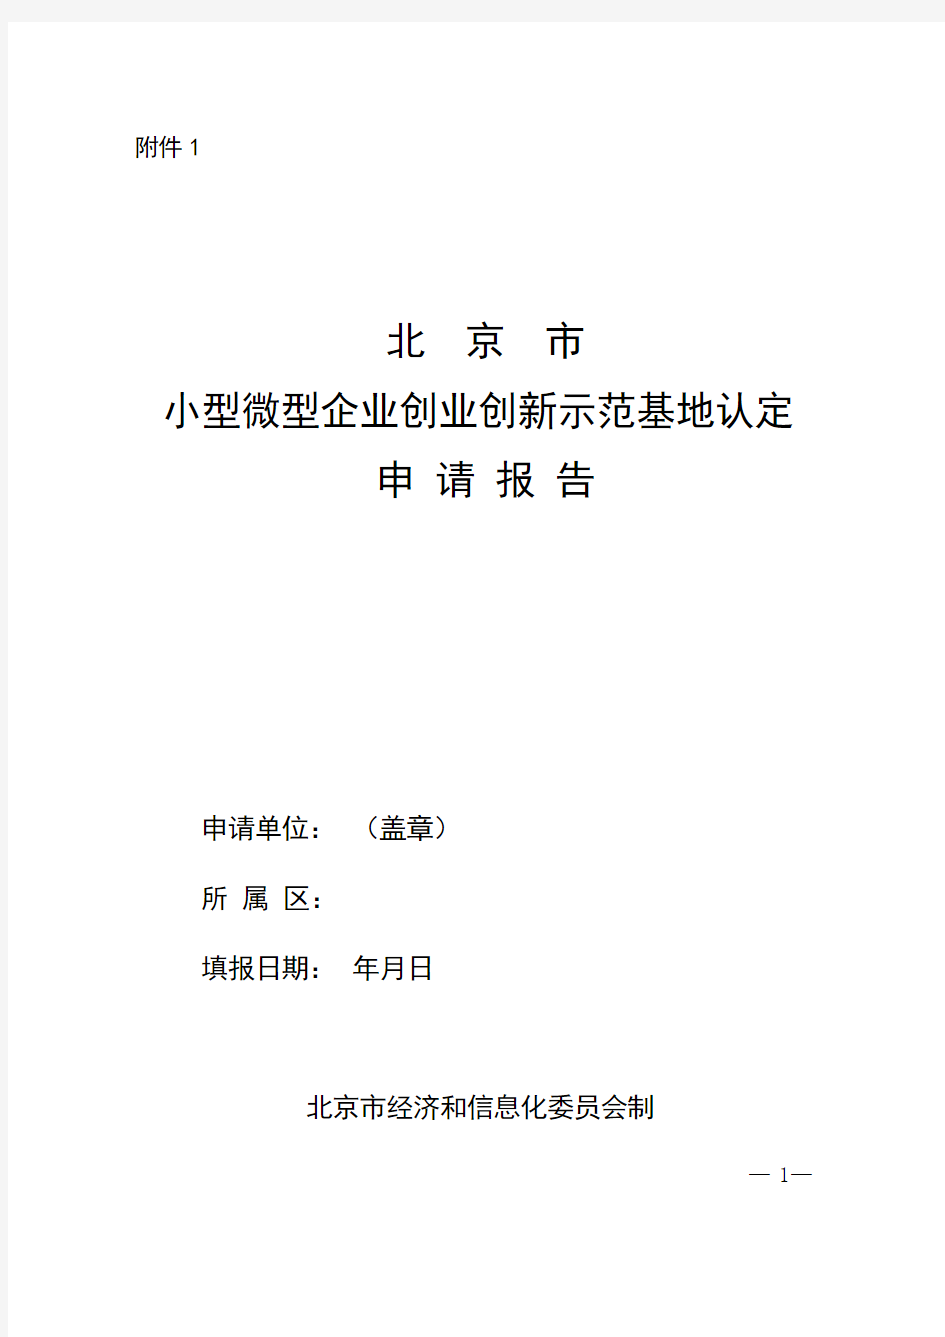 北京市小型微型企业创业创新示范基地认定申请报告